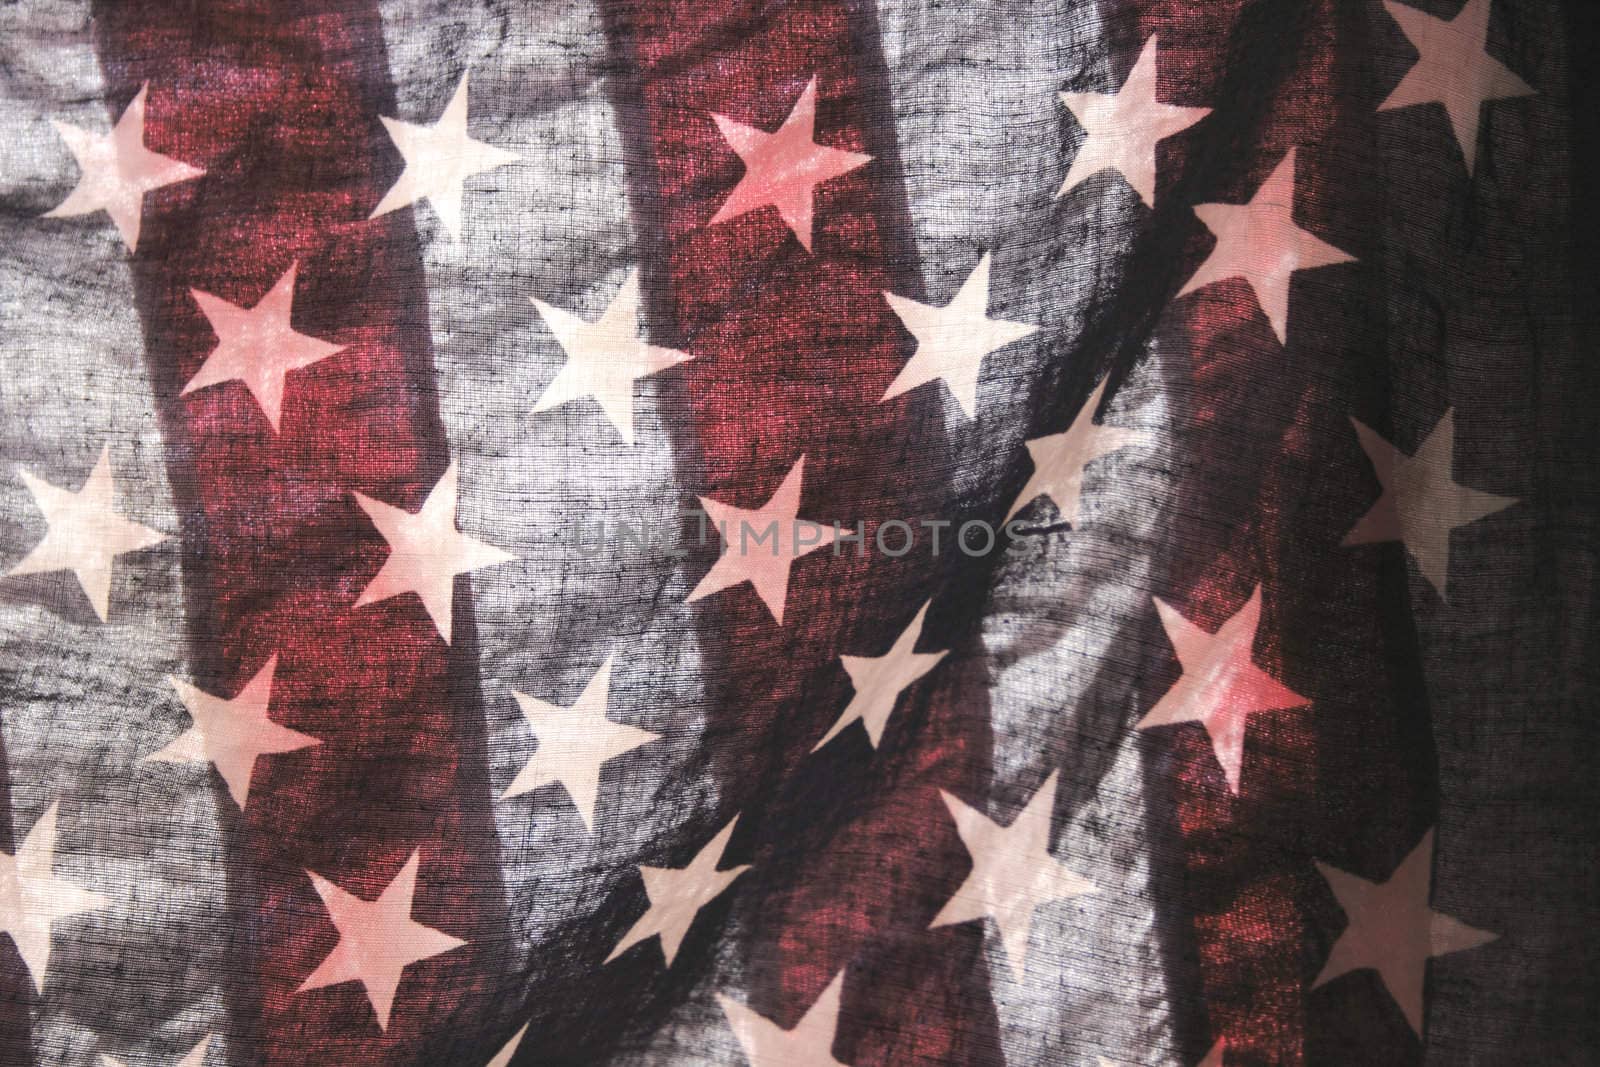 backlit old American flag showing stars over stripes